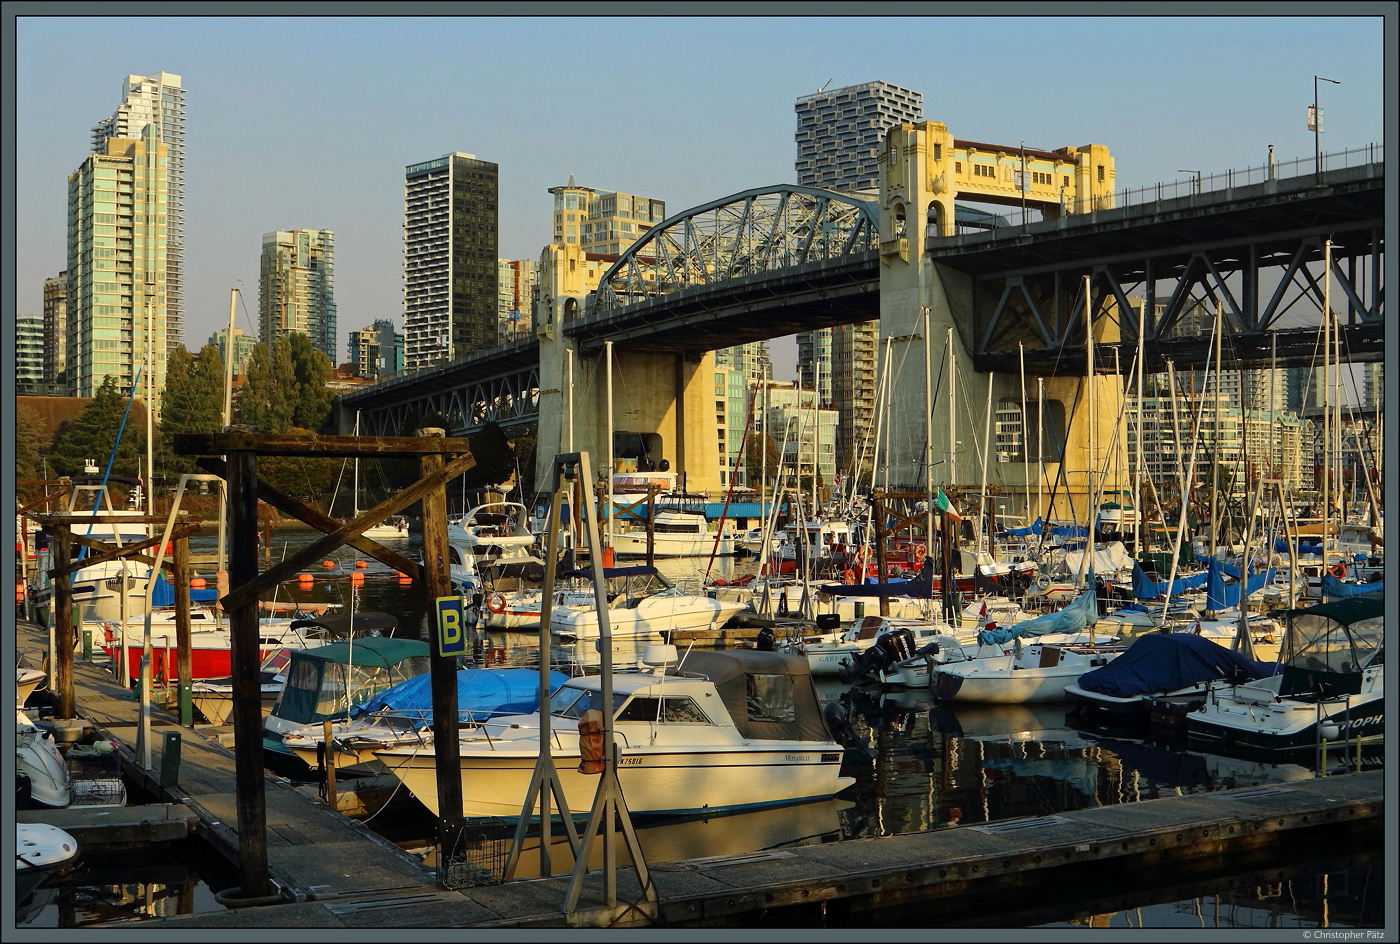 Die Burrard Street Bridge ist die lteste der drei Brcken ber den False Creek in Vancouver. Sie wurde 1932 erffnet und verbindet die Stadtteile Kitsilano und West End. (16.10.2022) 